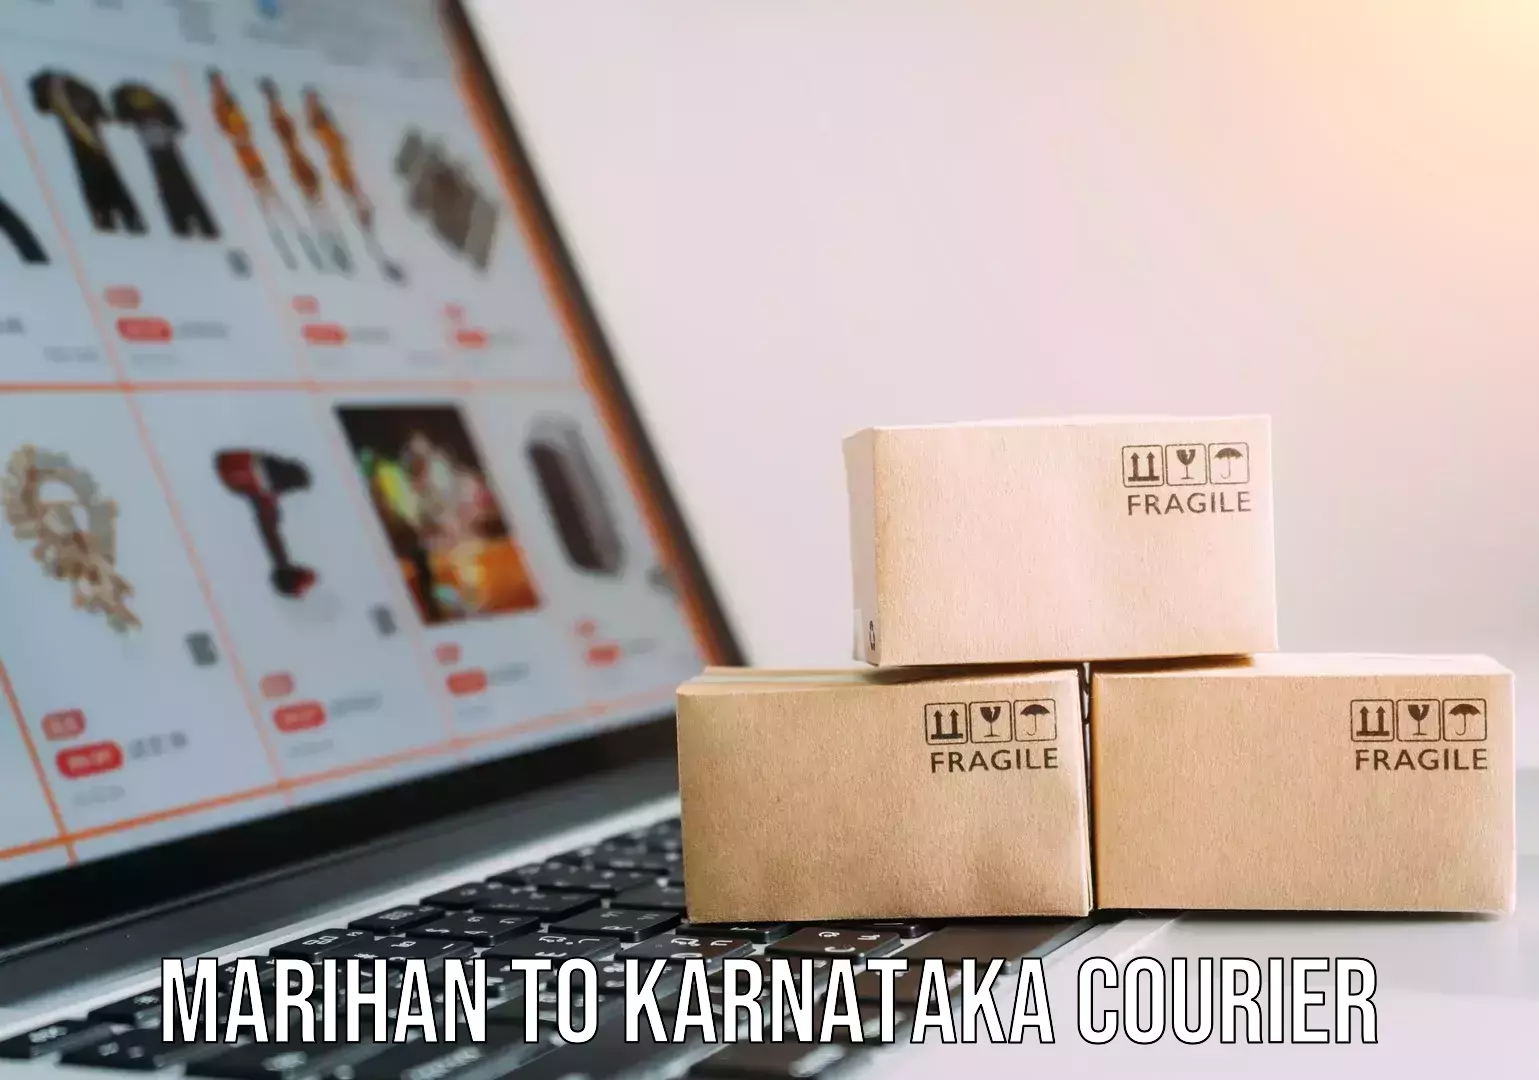 Furniture transport experts Marihan to Karnataka